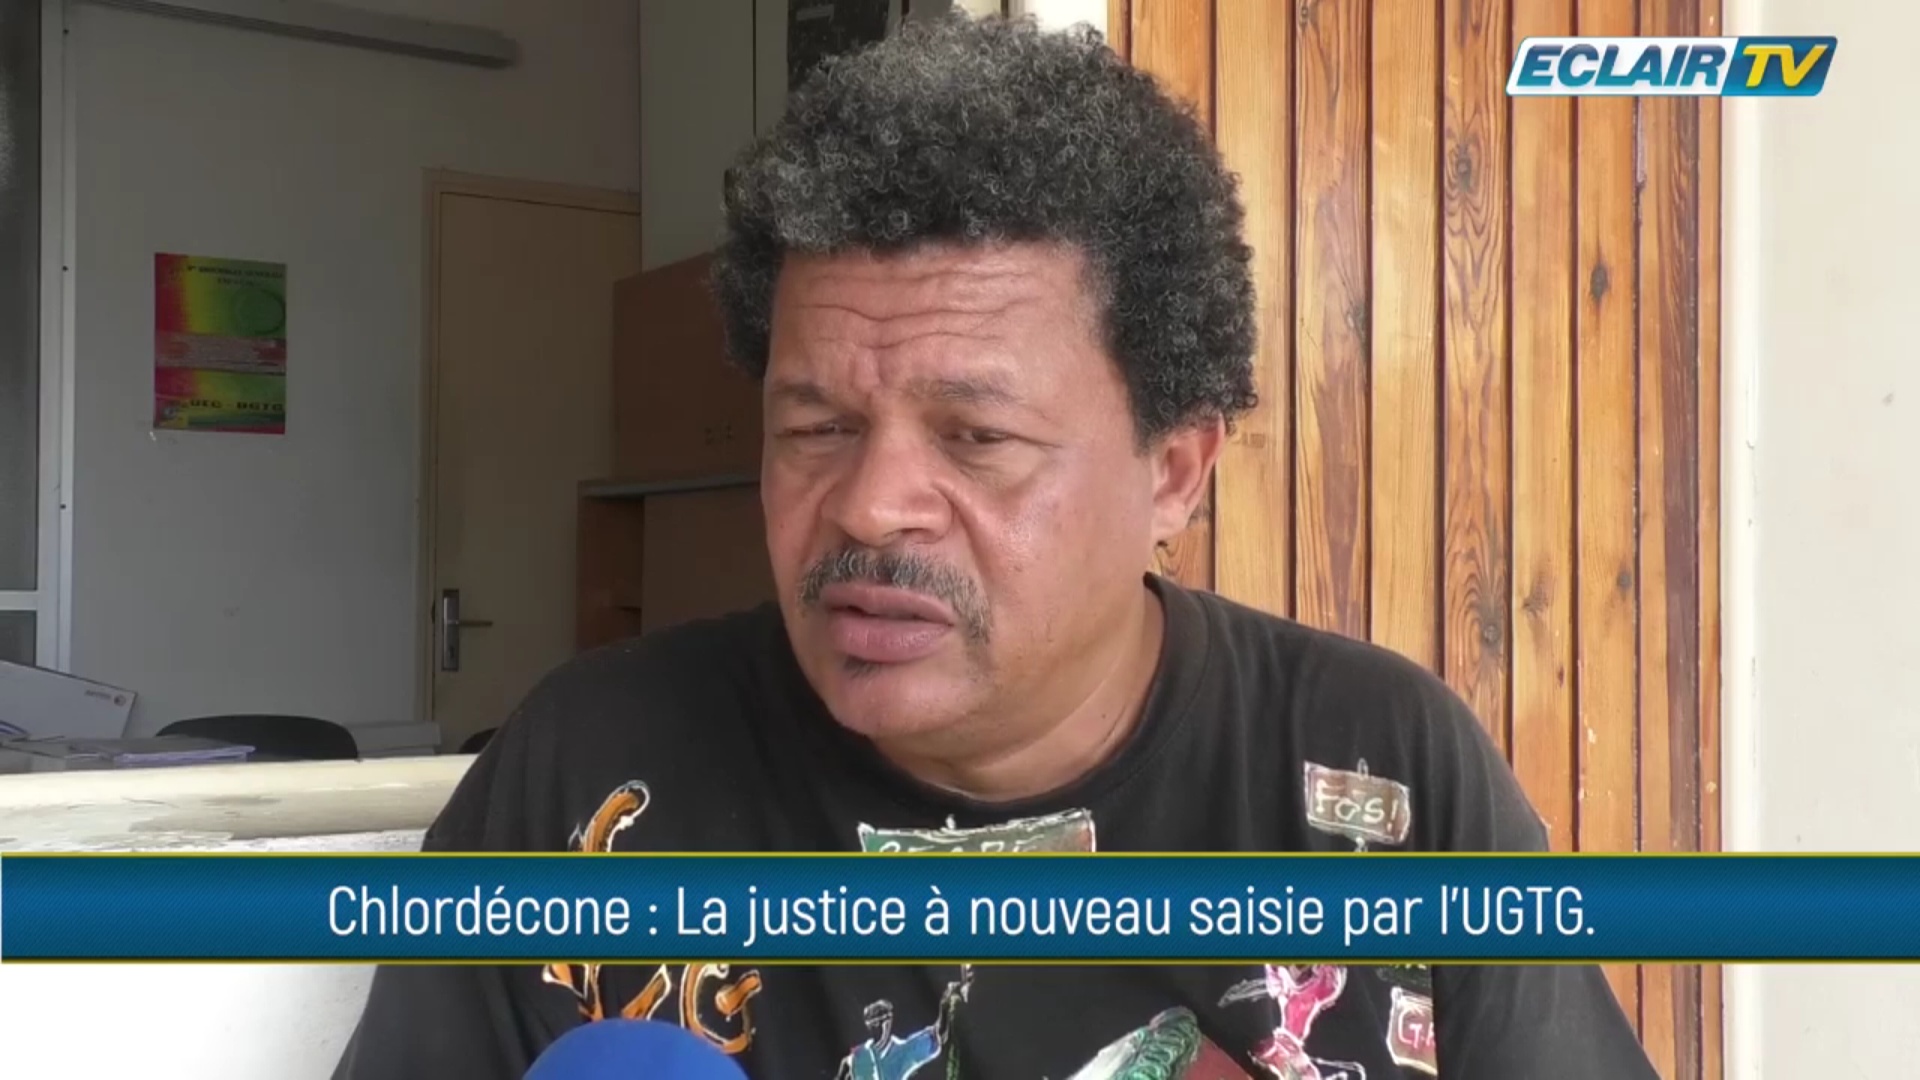 [Vidéo] Onews Guadeloupe. Chloredécone. La justice à nouveau saisie par l UGTG (Eclair tv)